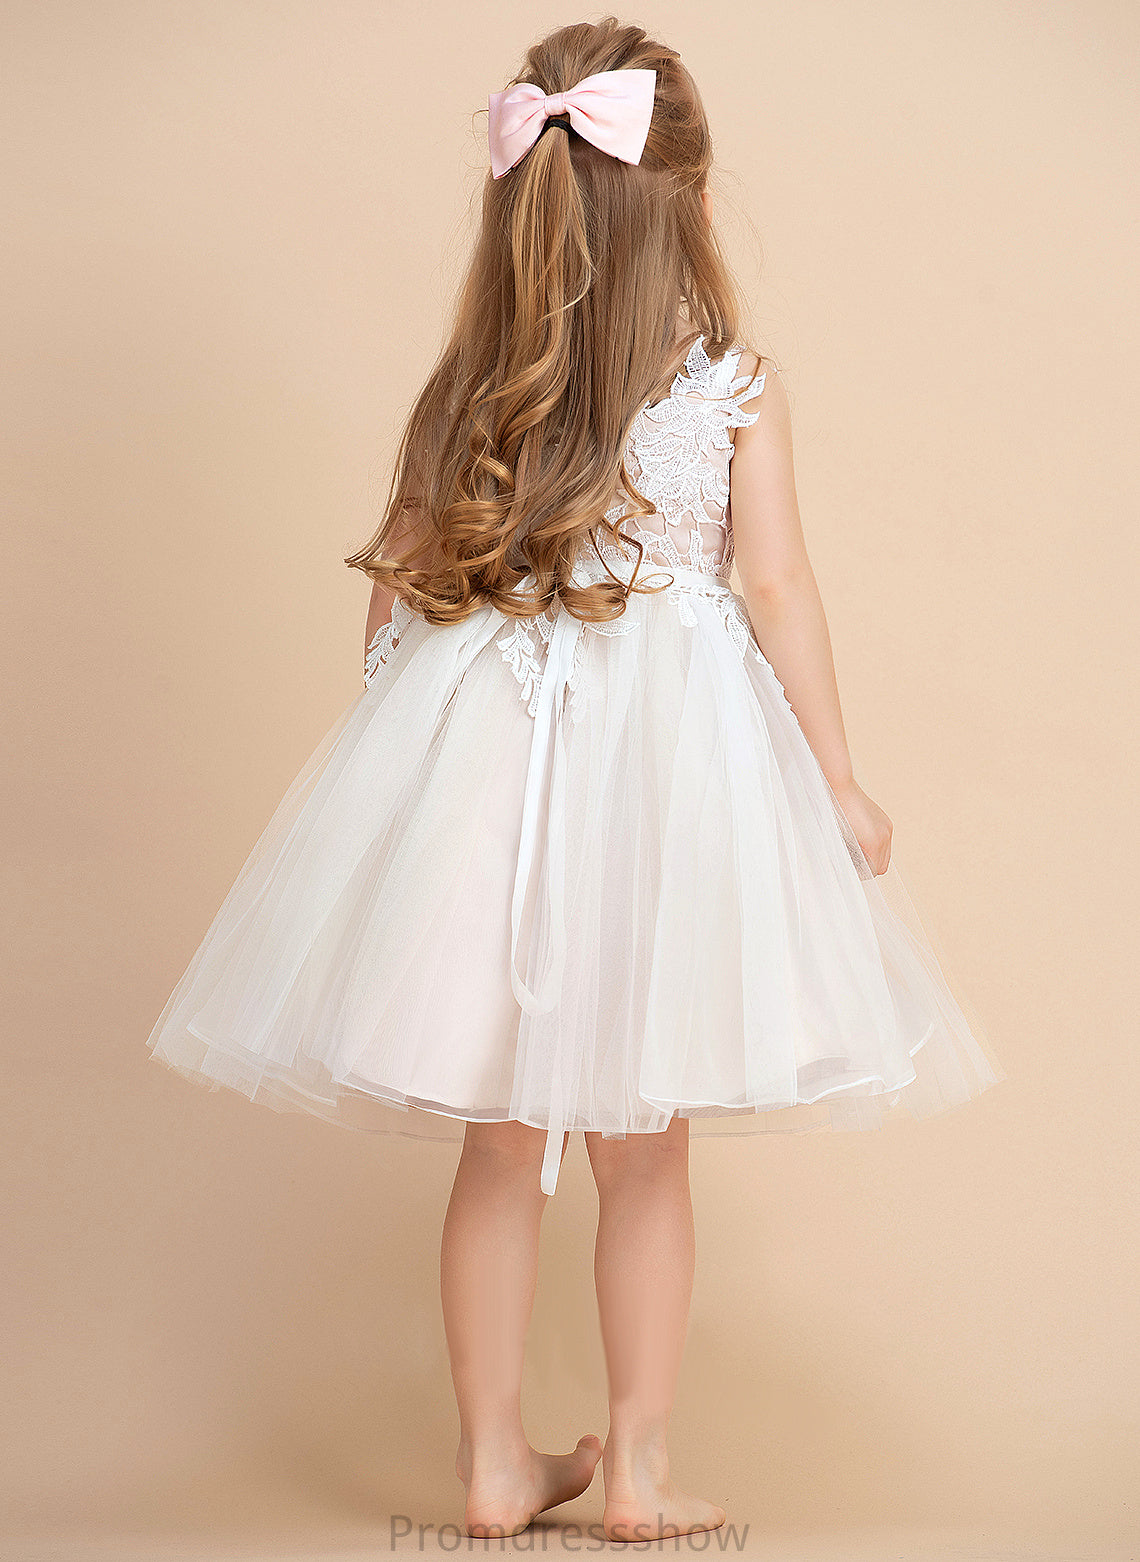 Knee-length A-Line V-neck/Straps Tulle/Lace Kimora Girl Dress Sleeveless - Flower Flower Girl Dresses